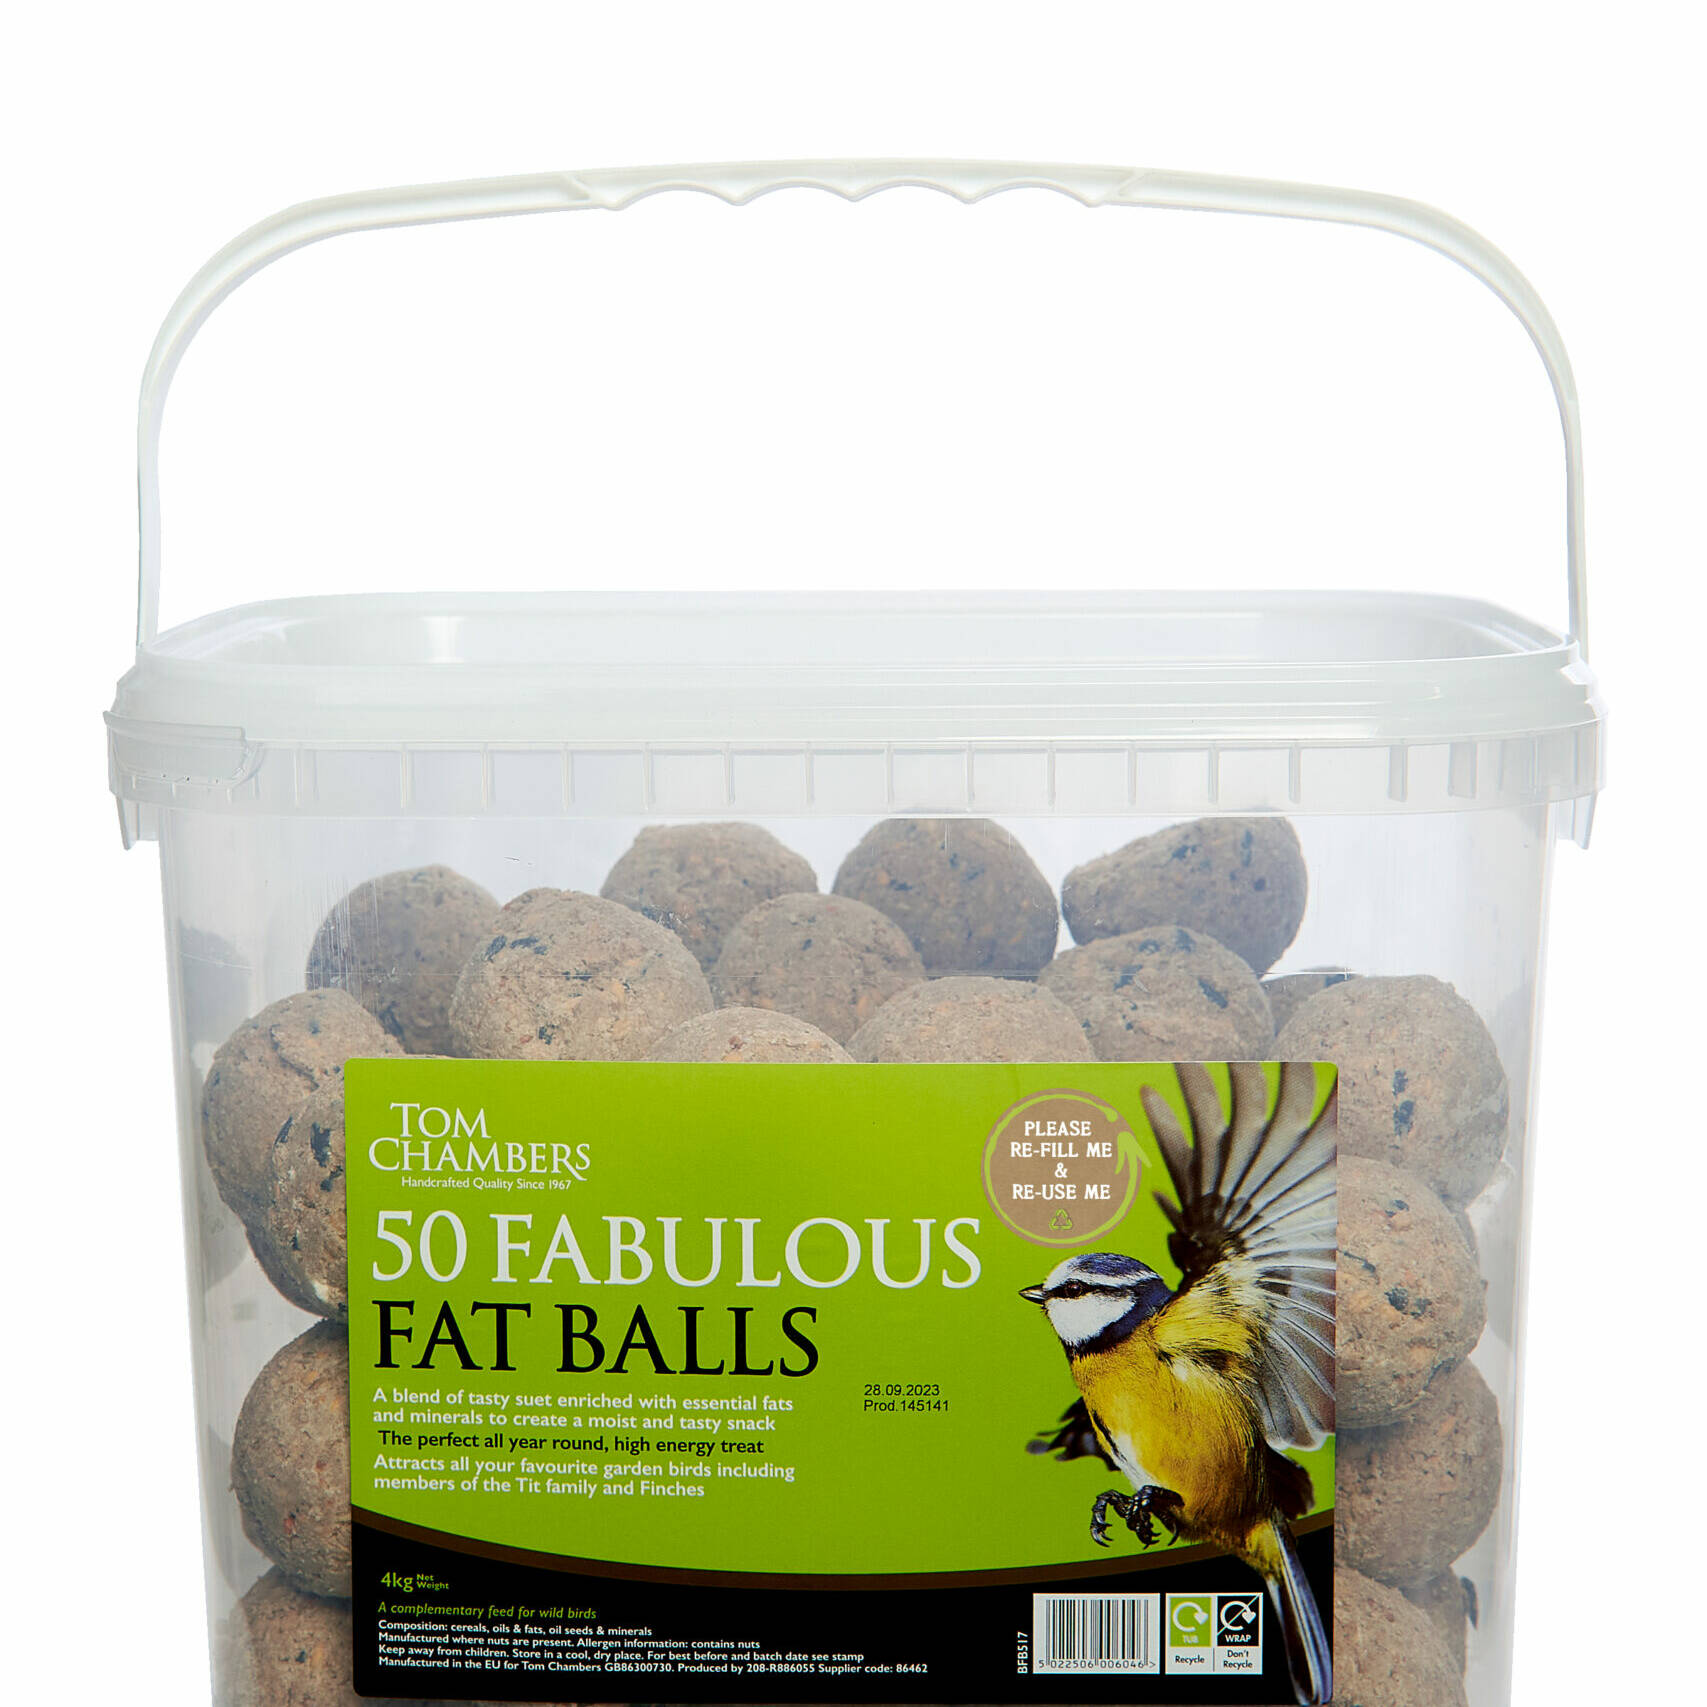 Tom chambers Fat Balls - 50 Tub - No Net